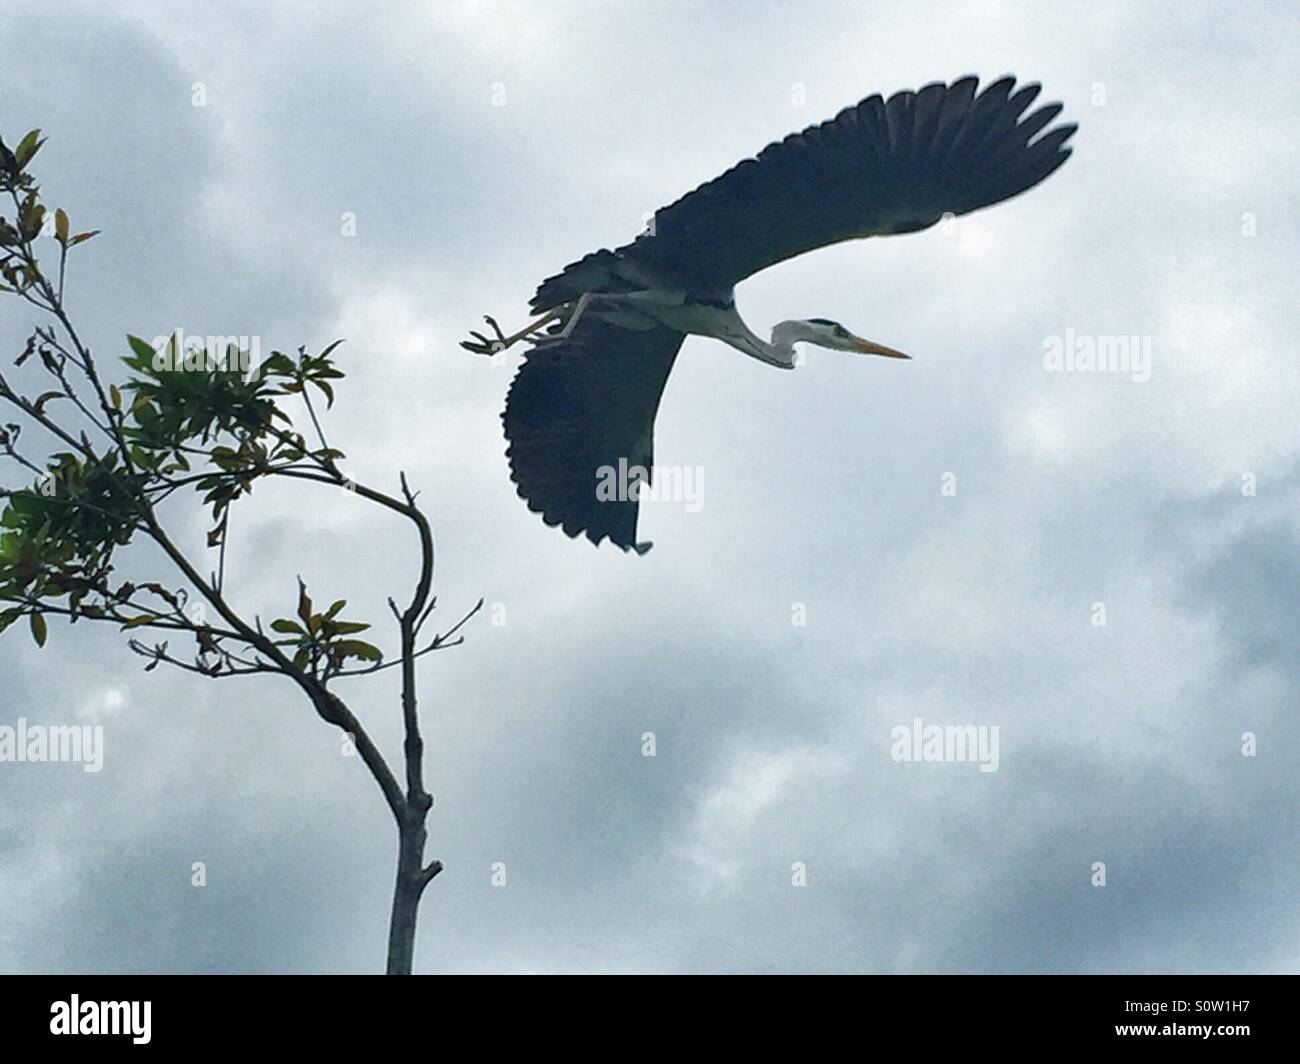 A Heron takes off Stock Photo